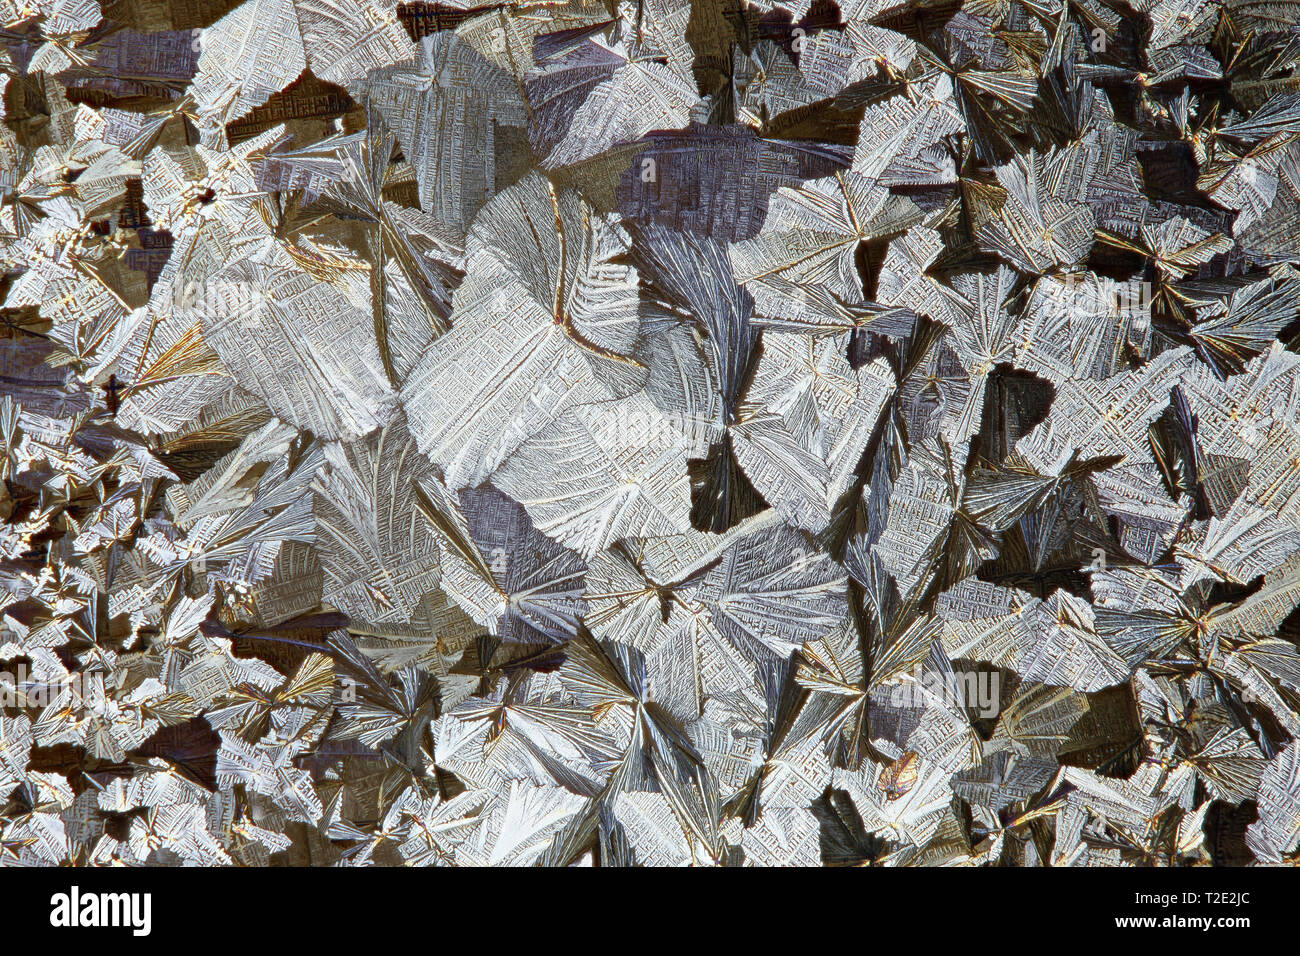 Kristalle von Acetylsalicylsäure, eine gemeinsame Schmerzmittel, Mikroskop Bild Stockfoto